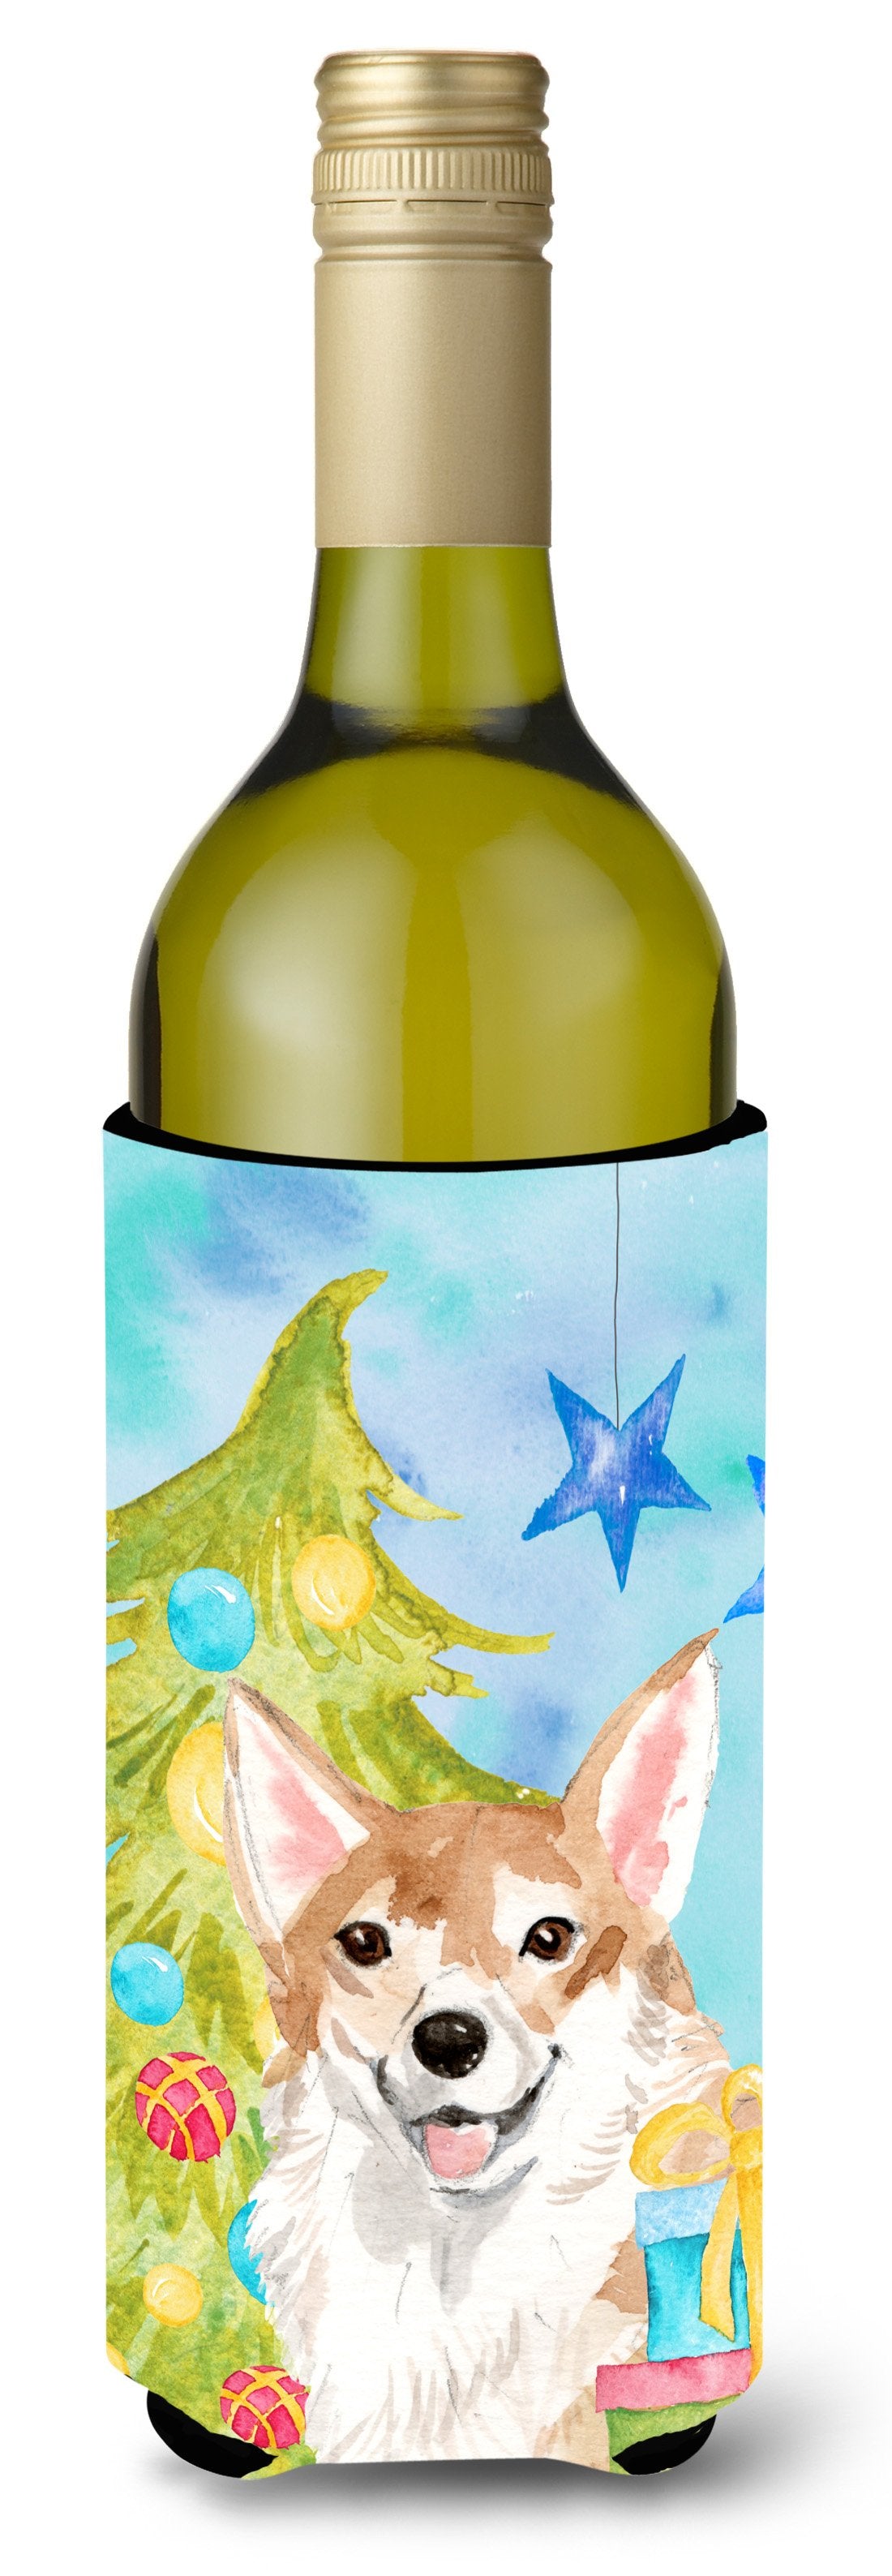 Corgi Christmas Wine Bottle Beverge Insulator Hugger BB9414LITERK by Caroline's Treasures